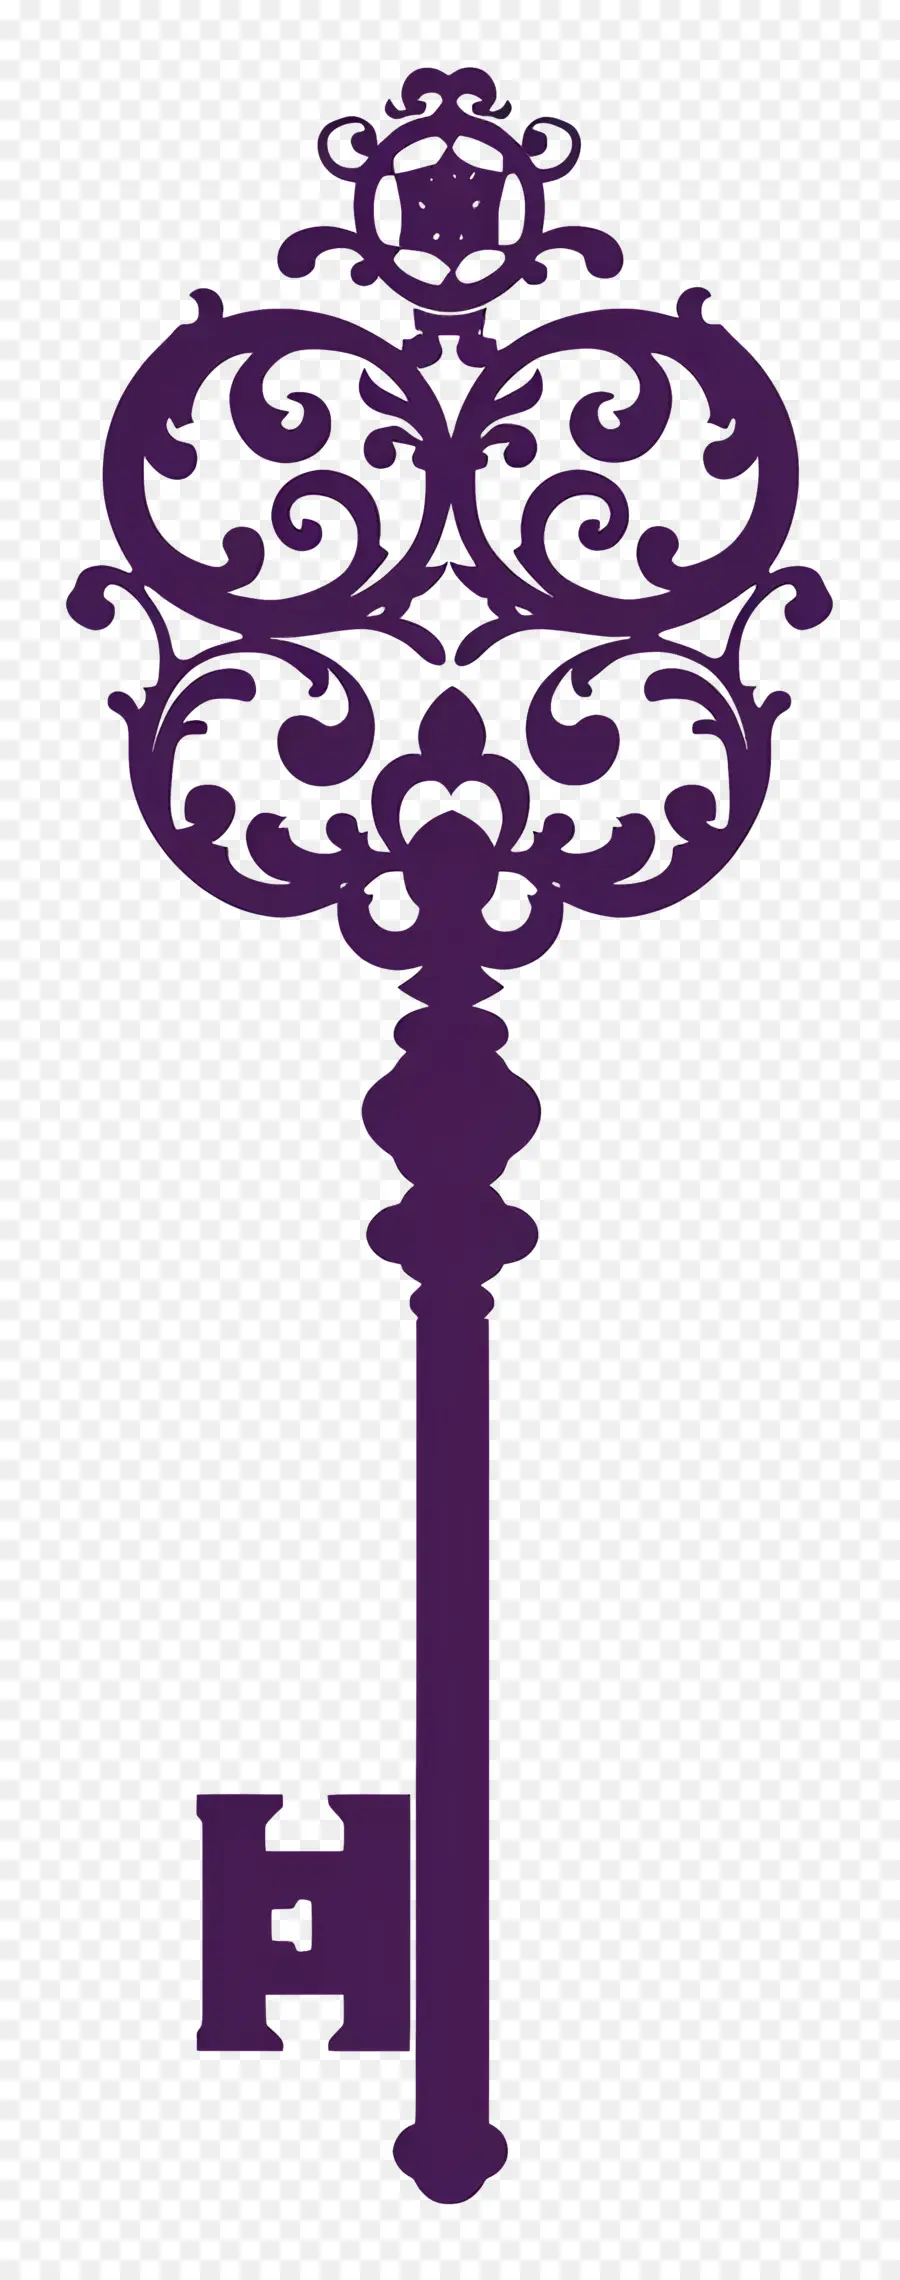 Chiave chiave ornato a chiave gotica chiave intagliata chiave da favola - Intricato design a chiave gotica ornata viola